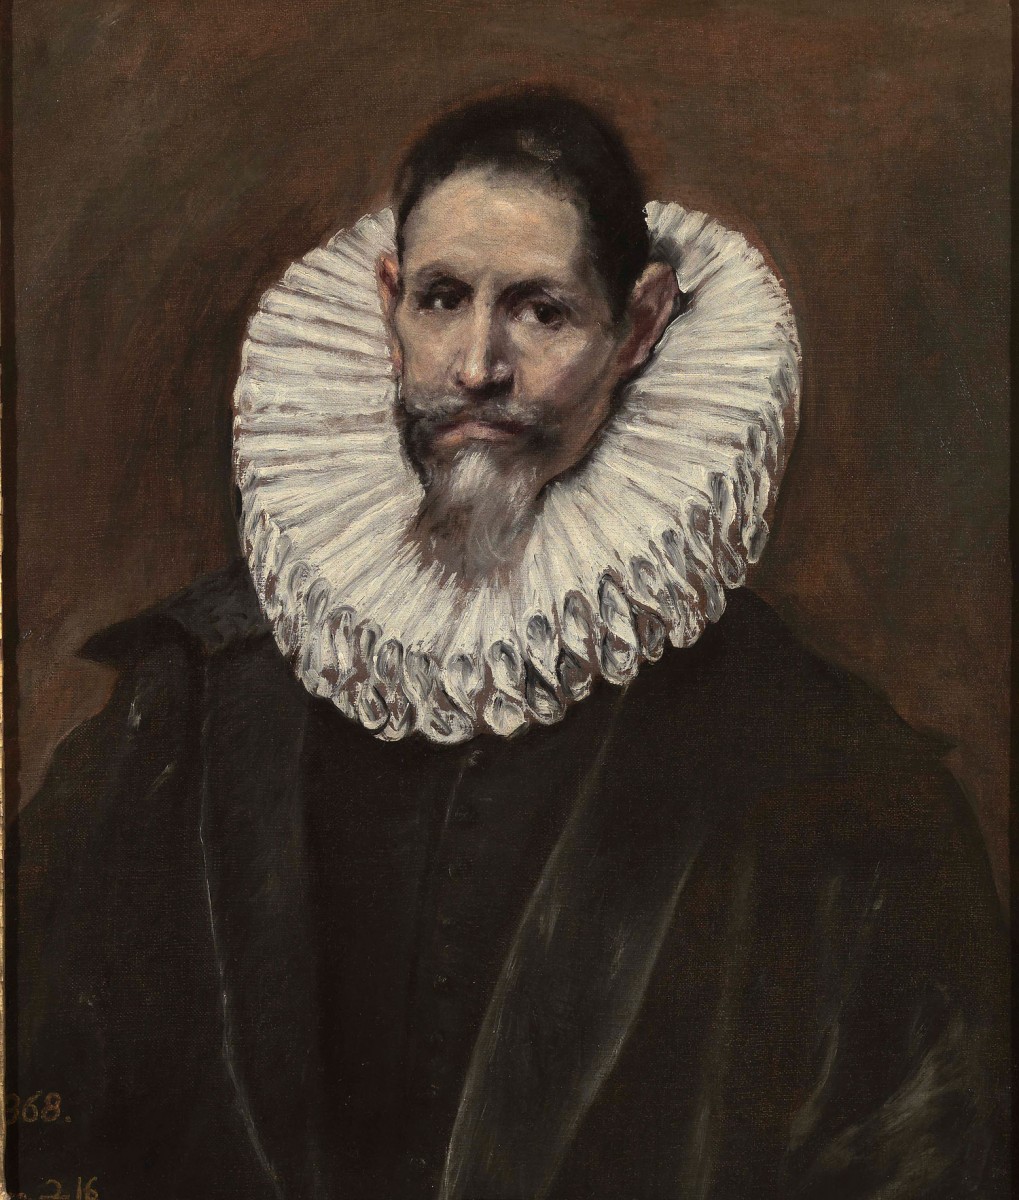 El Greco, Jerónimo de Cevallos, 1613. Museo Nacional del Prado, Madrid.